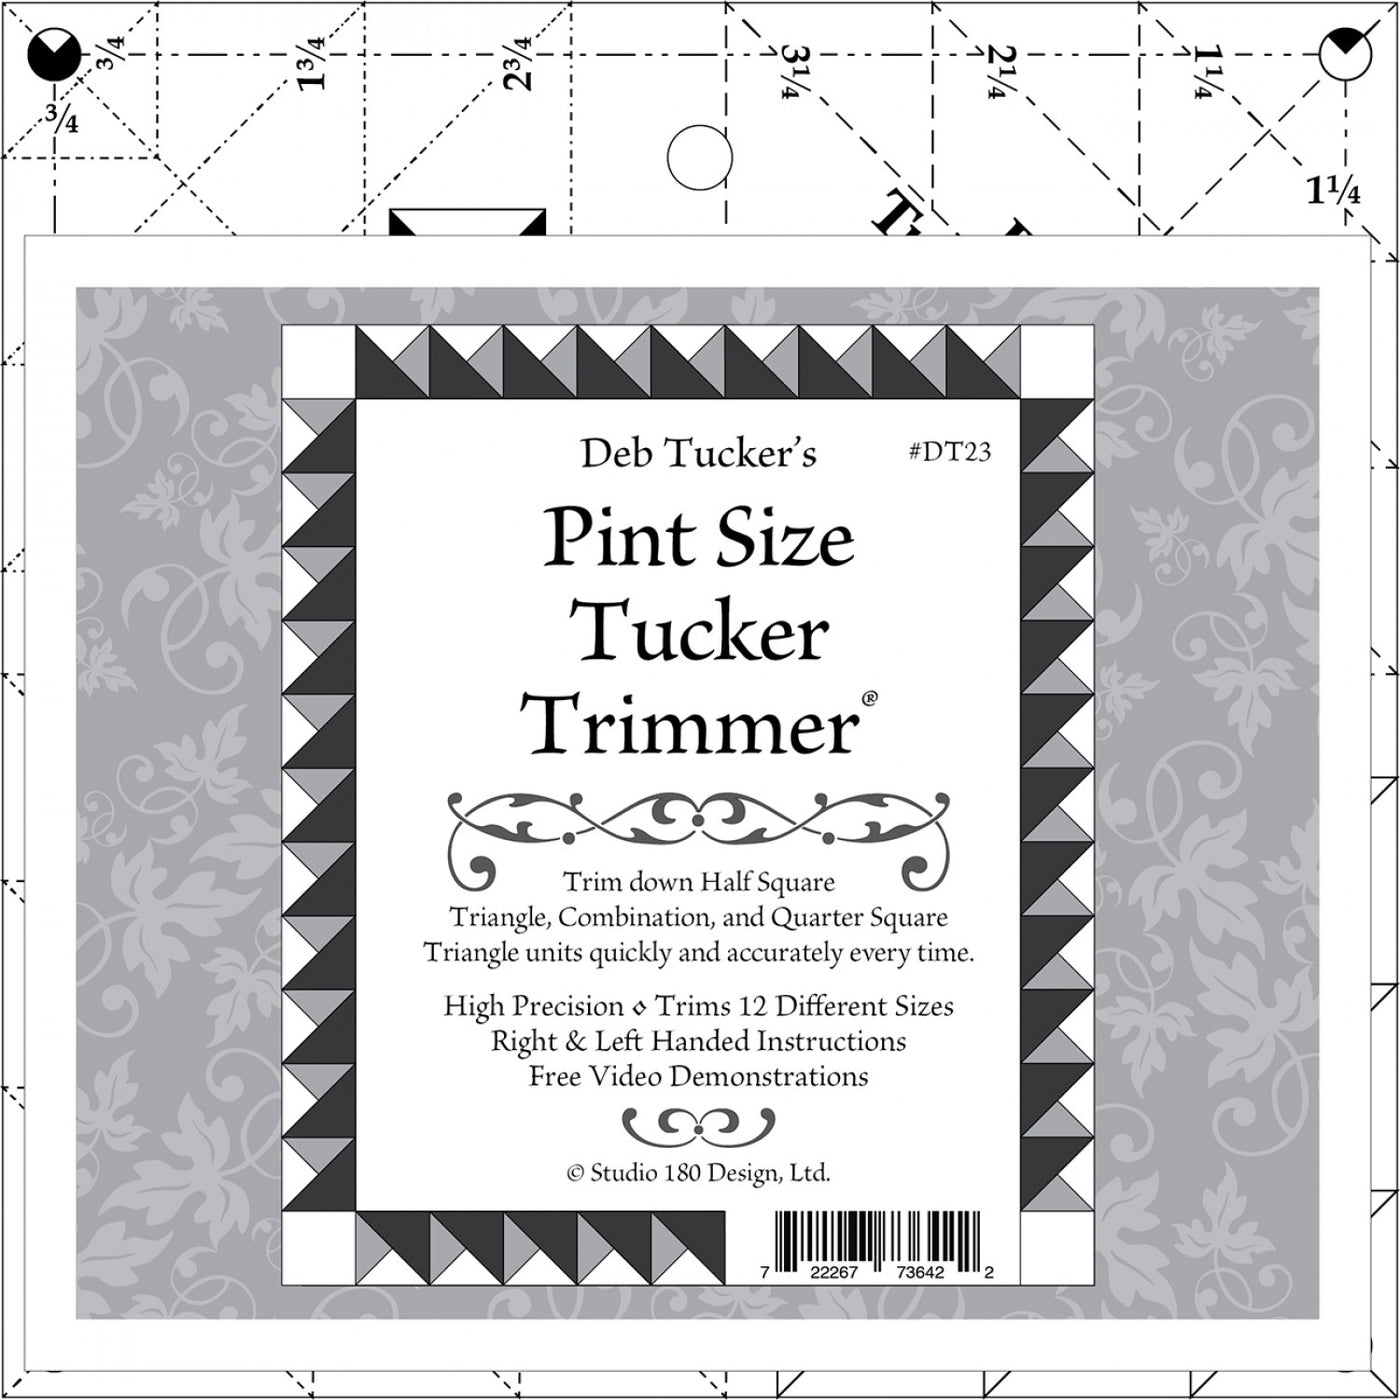 Pint Size Tucker Trimmer Tool - Deb Tucker